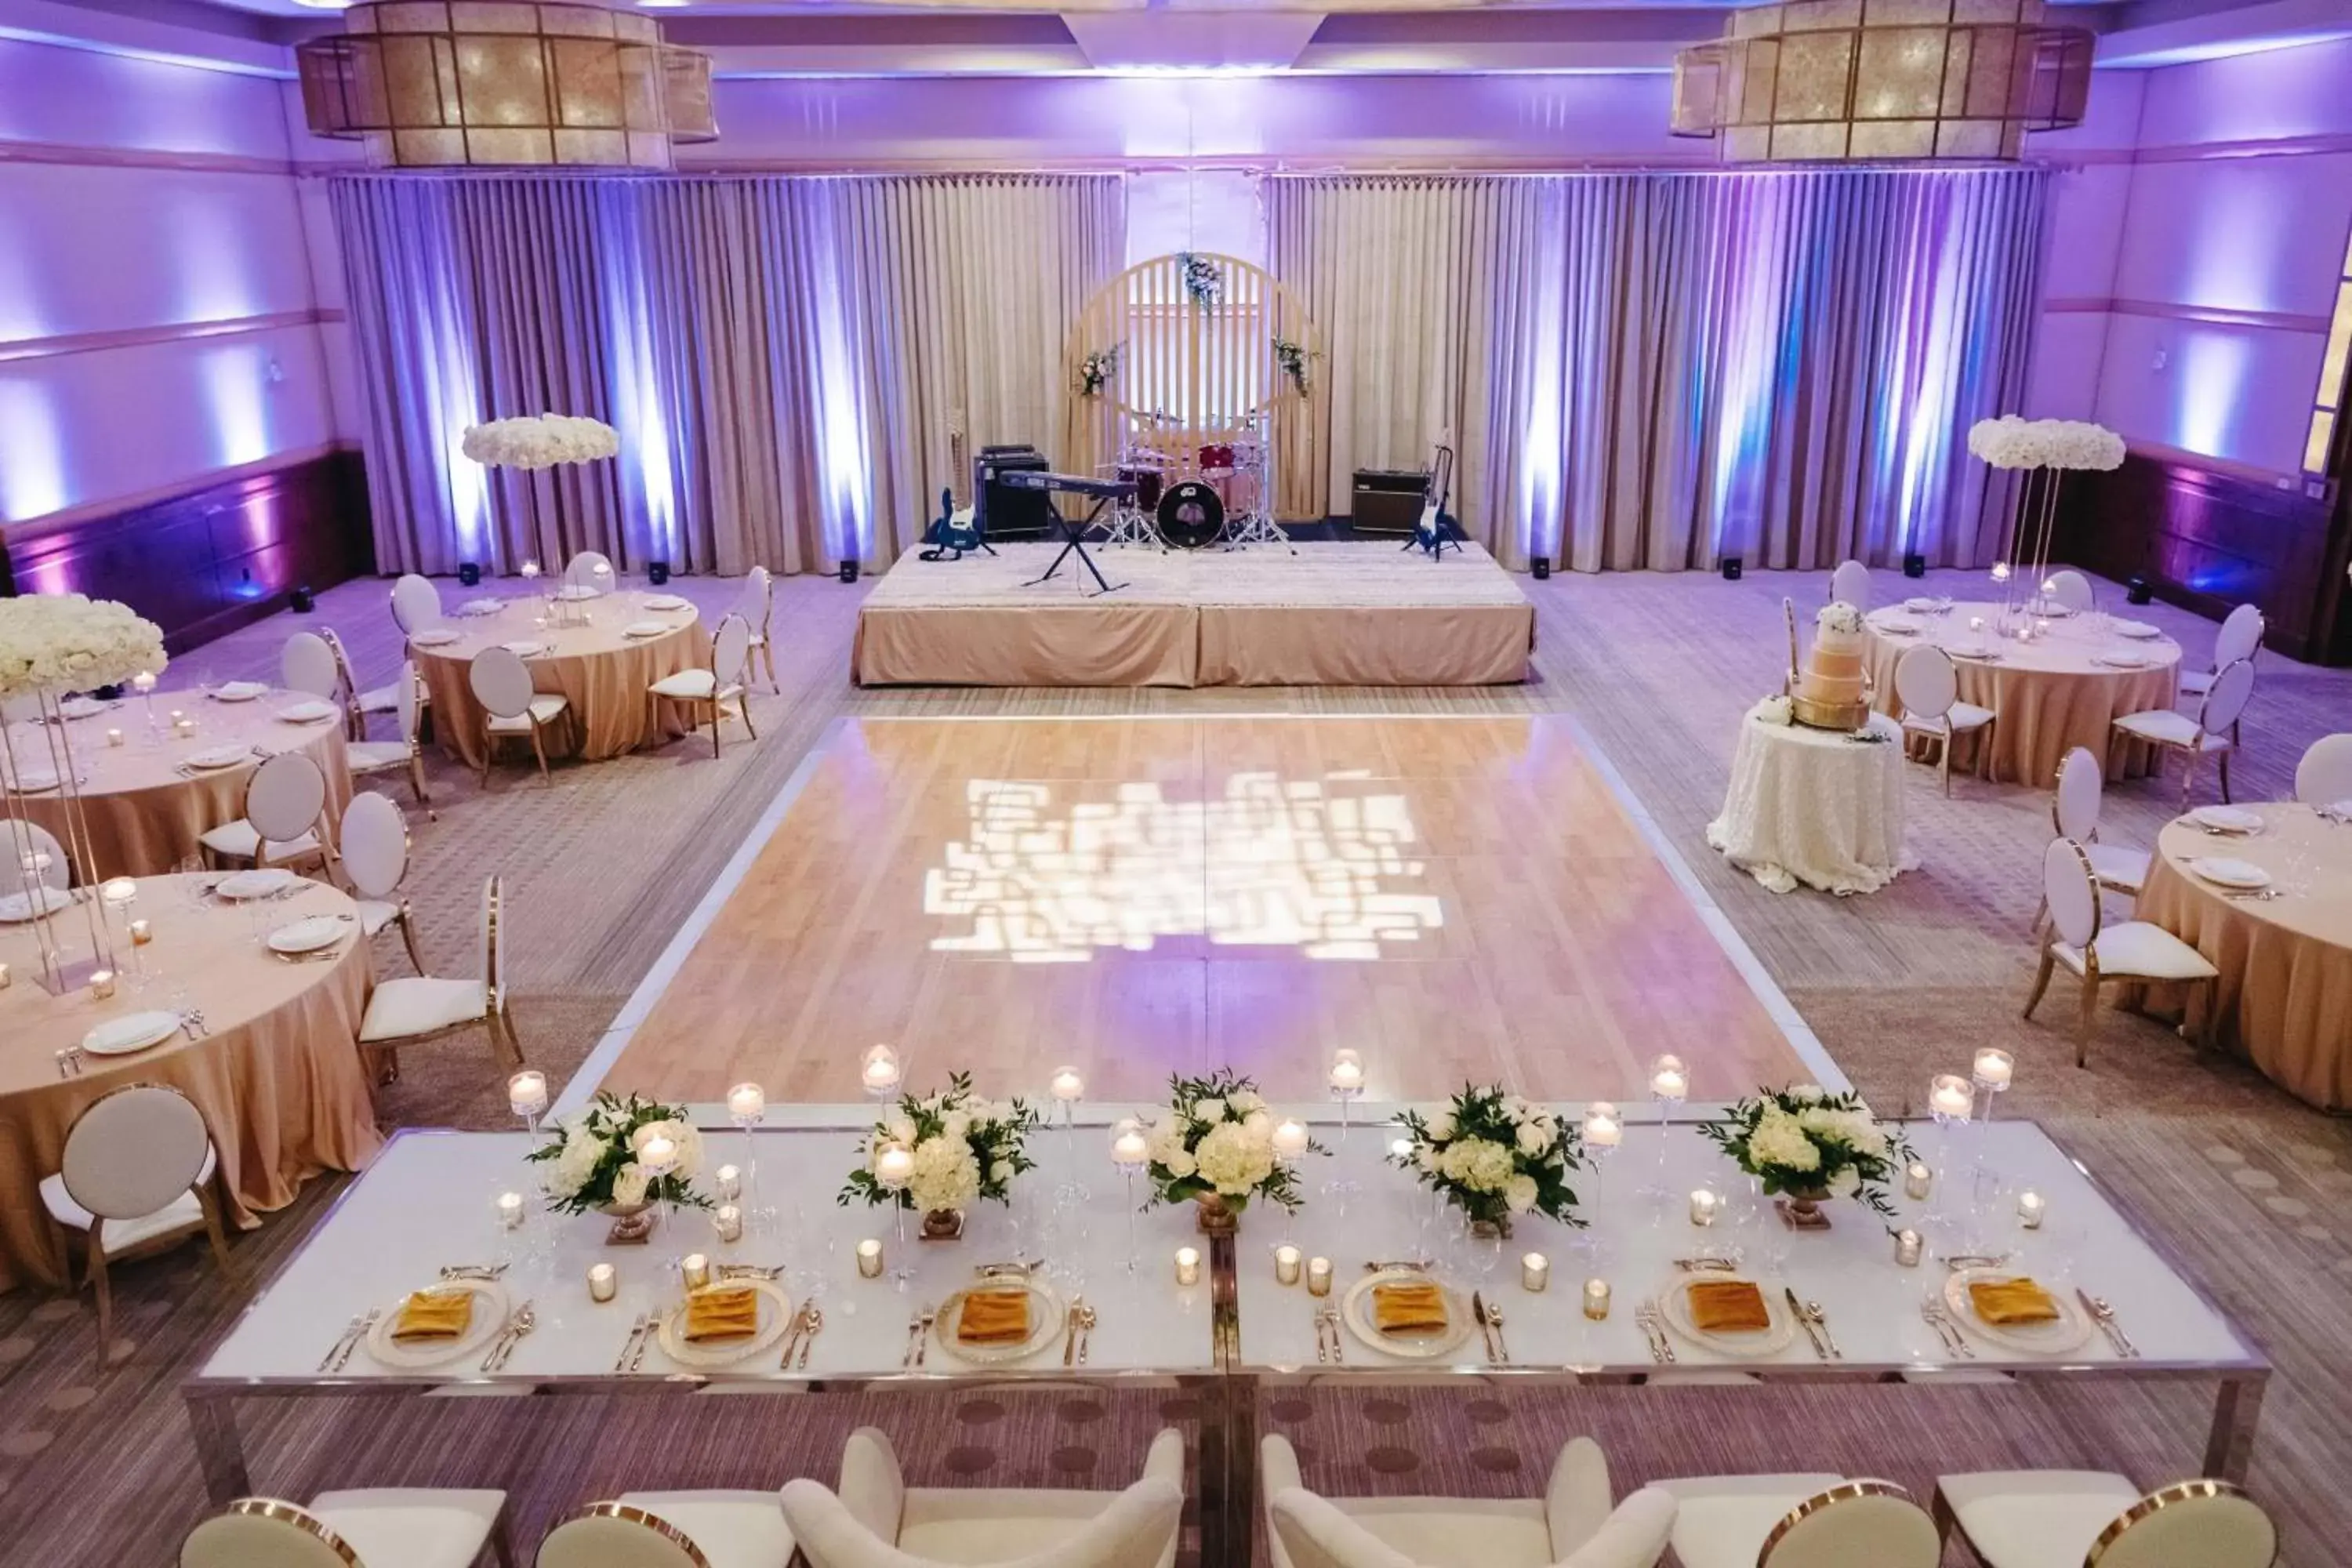 Banquet/Function facilities, Banquet Facilities in The Ritz-Carlton, Dove Mountain